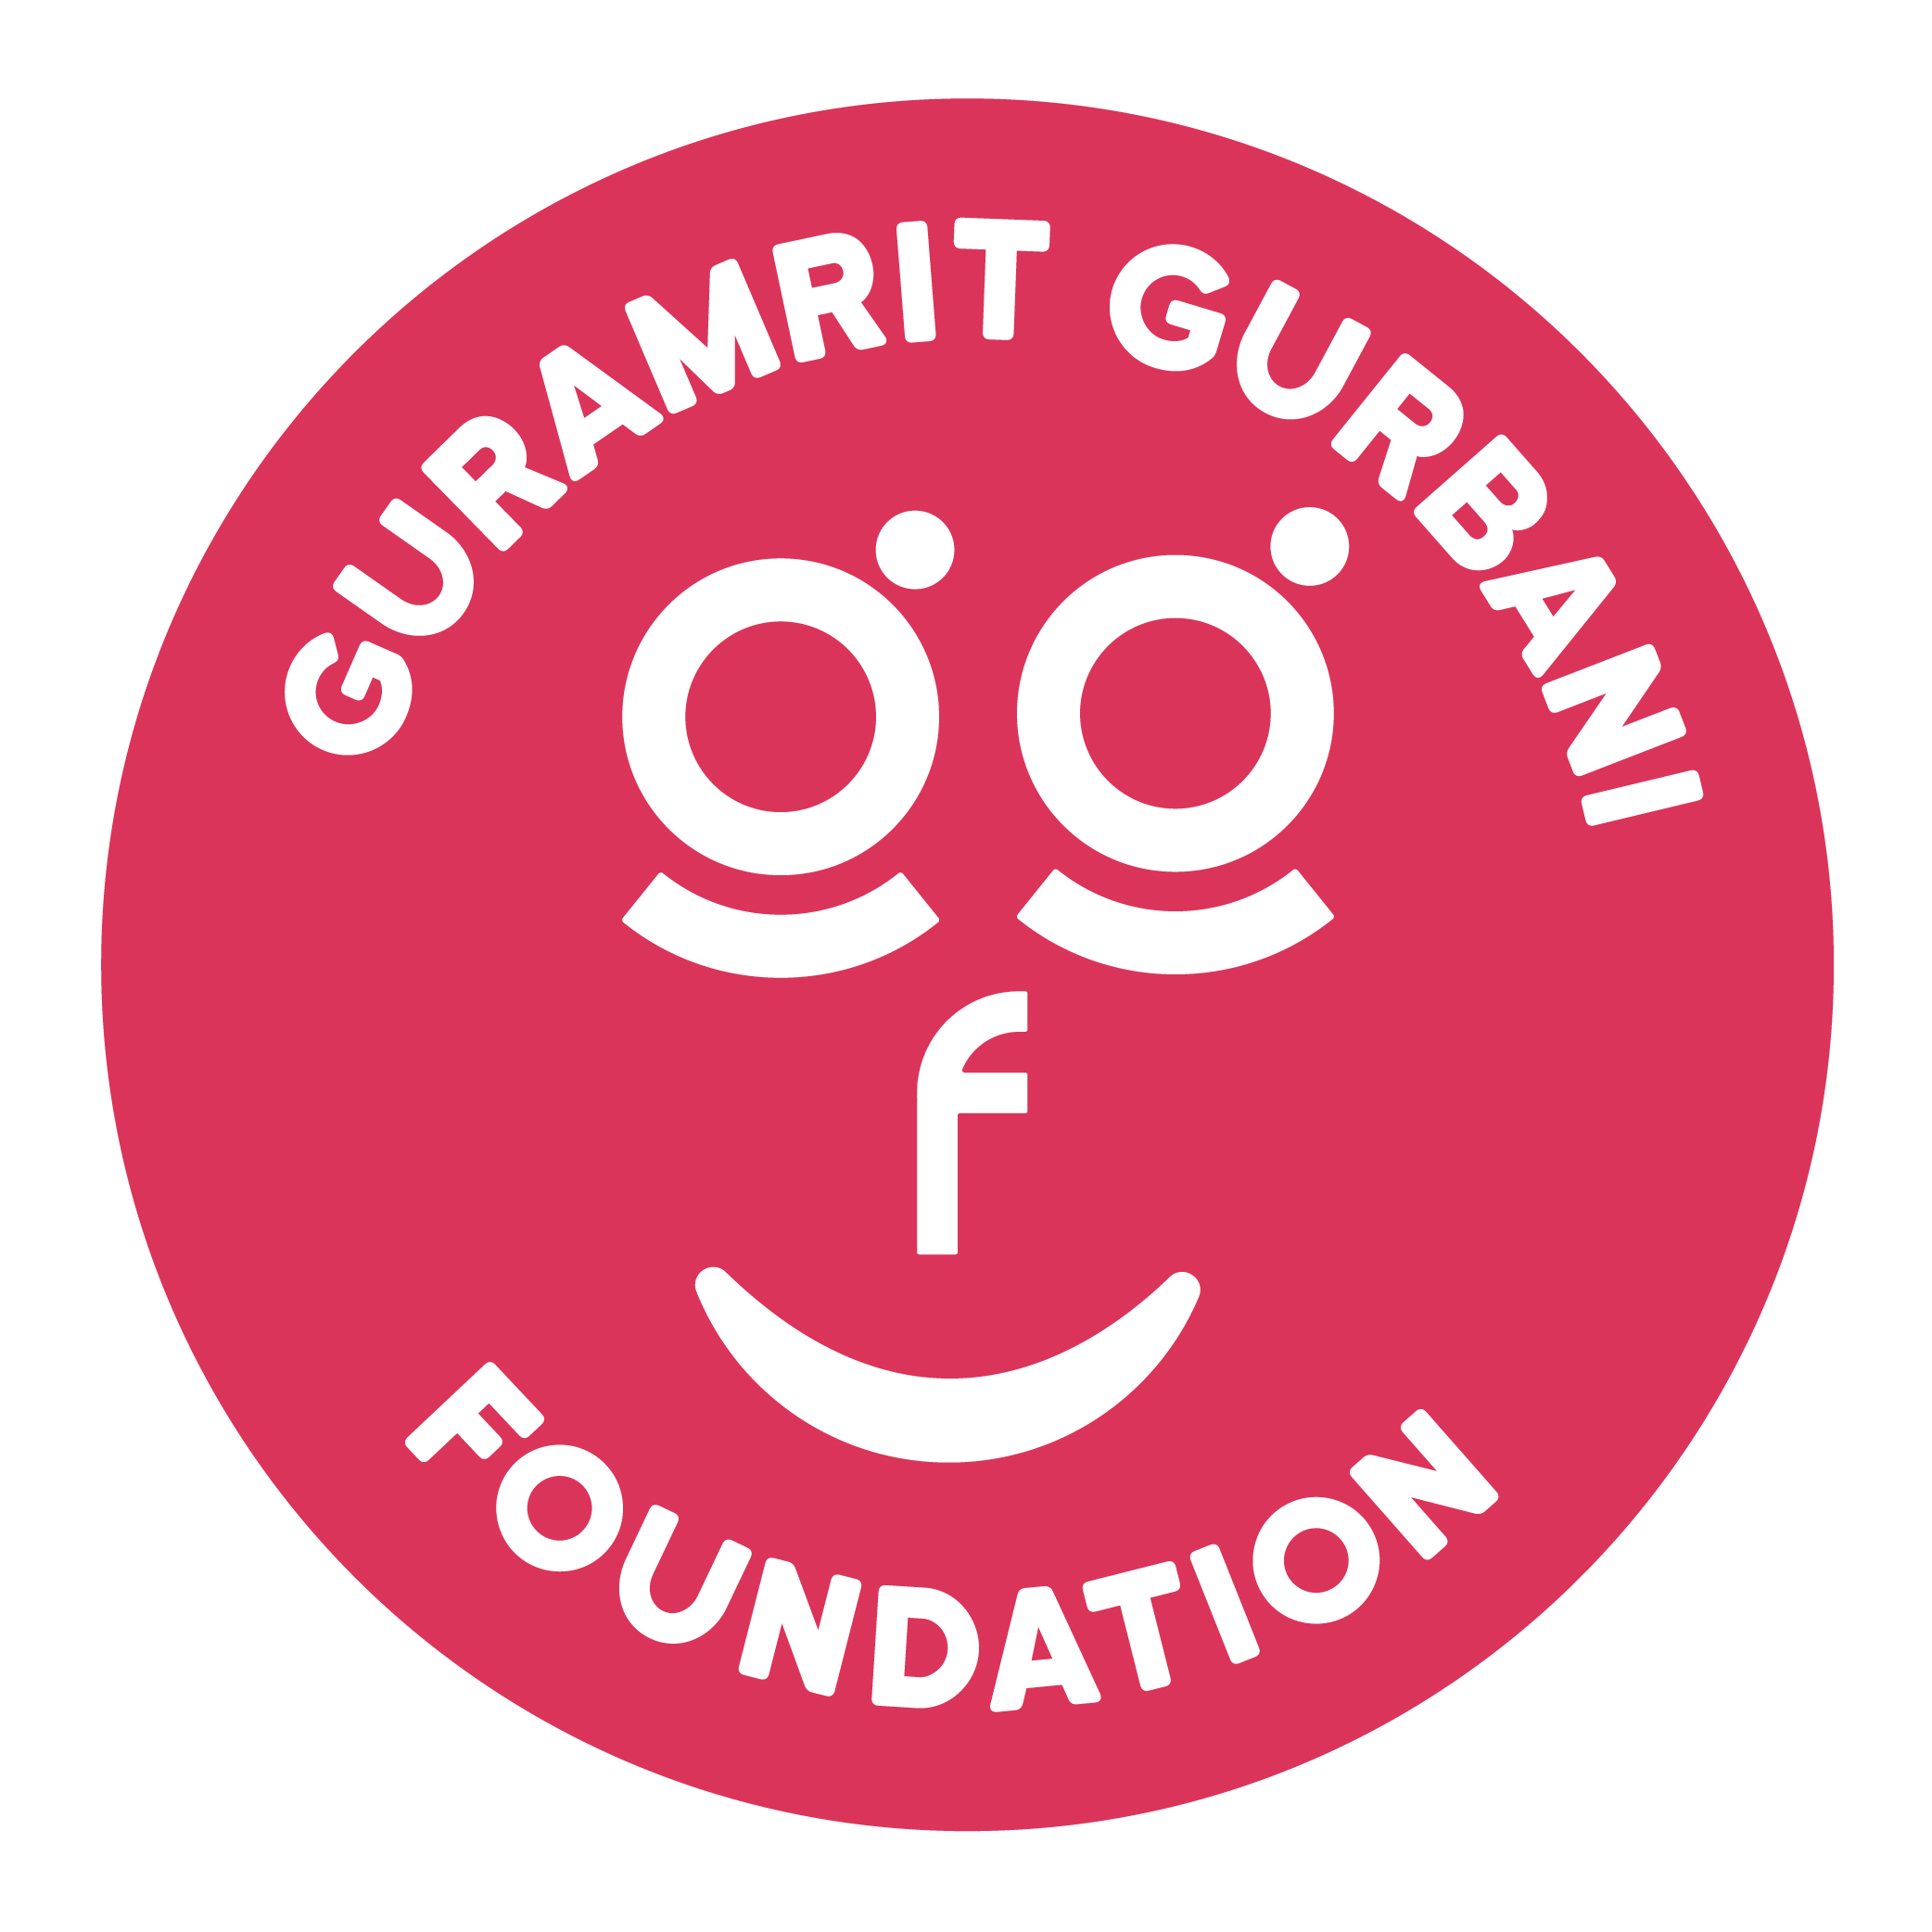 Guramrit Gurbani Foundation